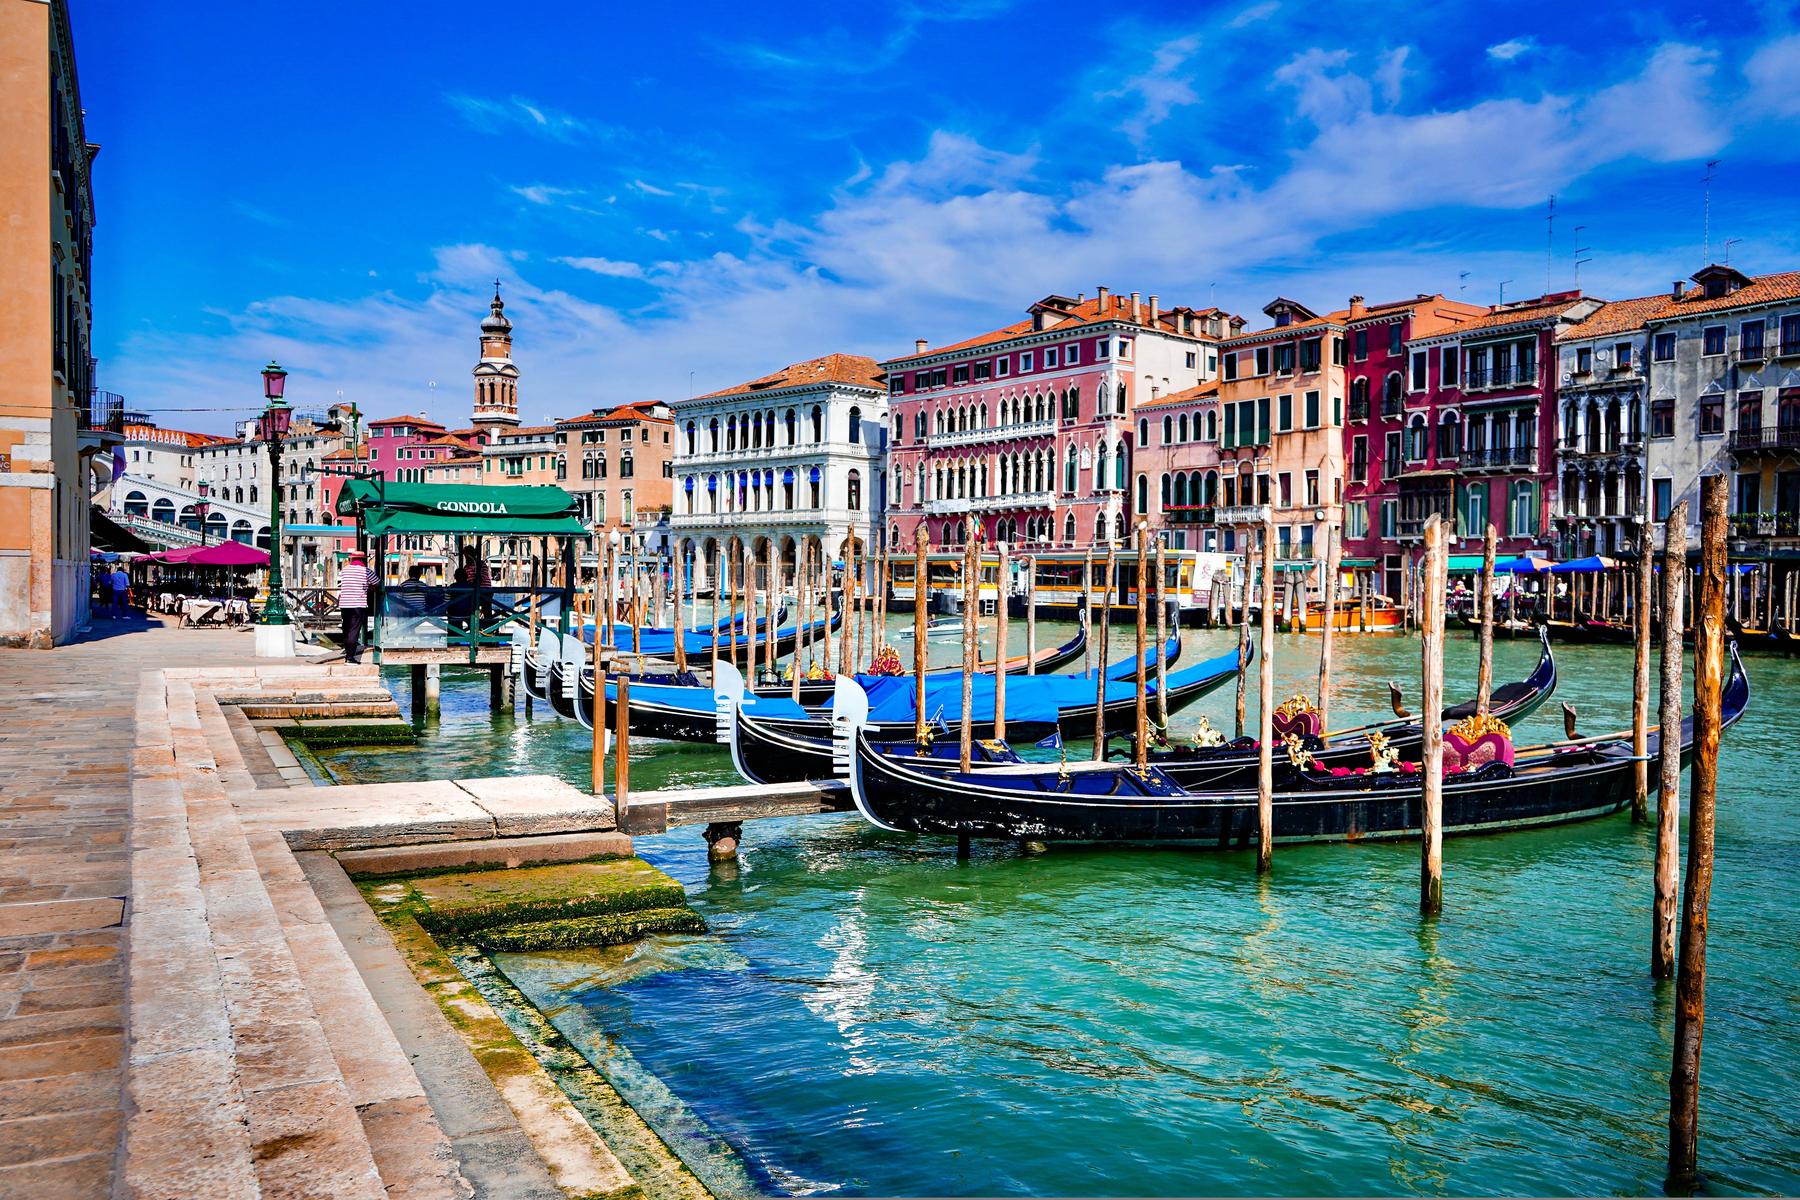 Alpe-Adria-Newsletter: Venedig ist also doch kein Disneyland  ????